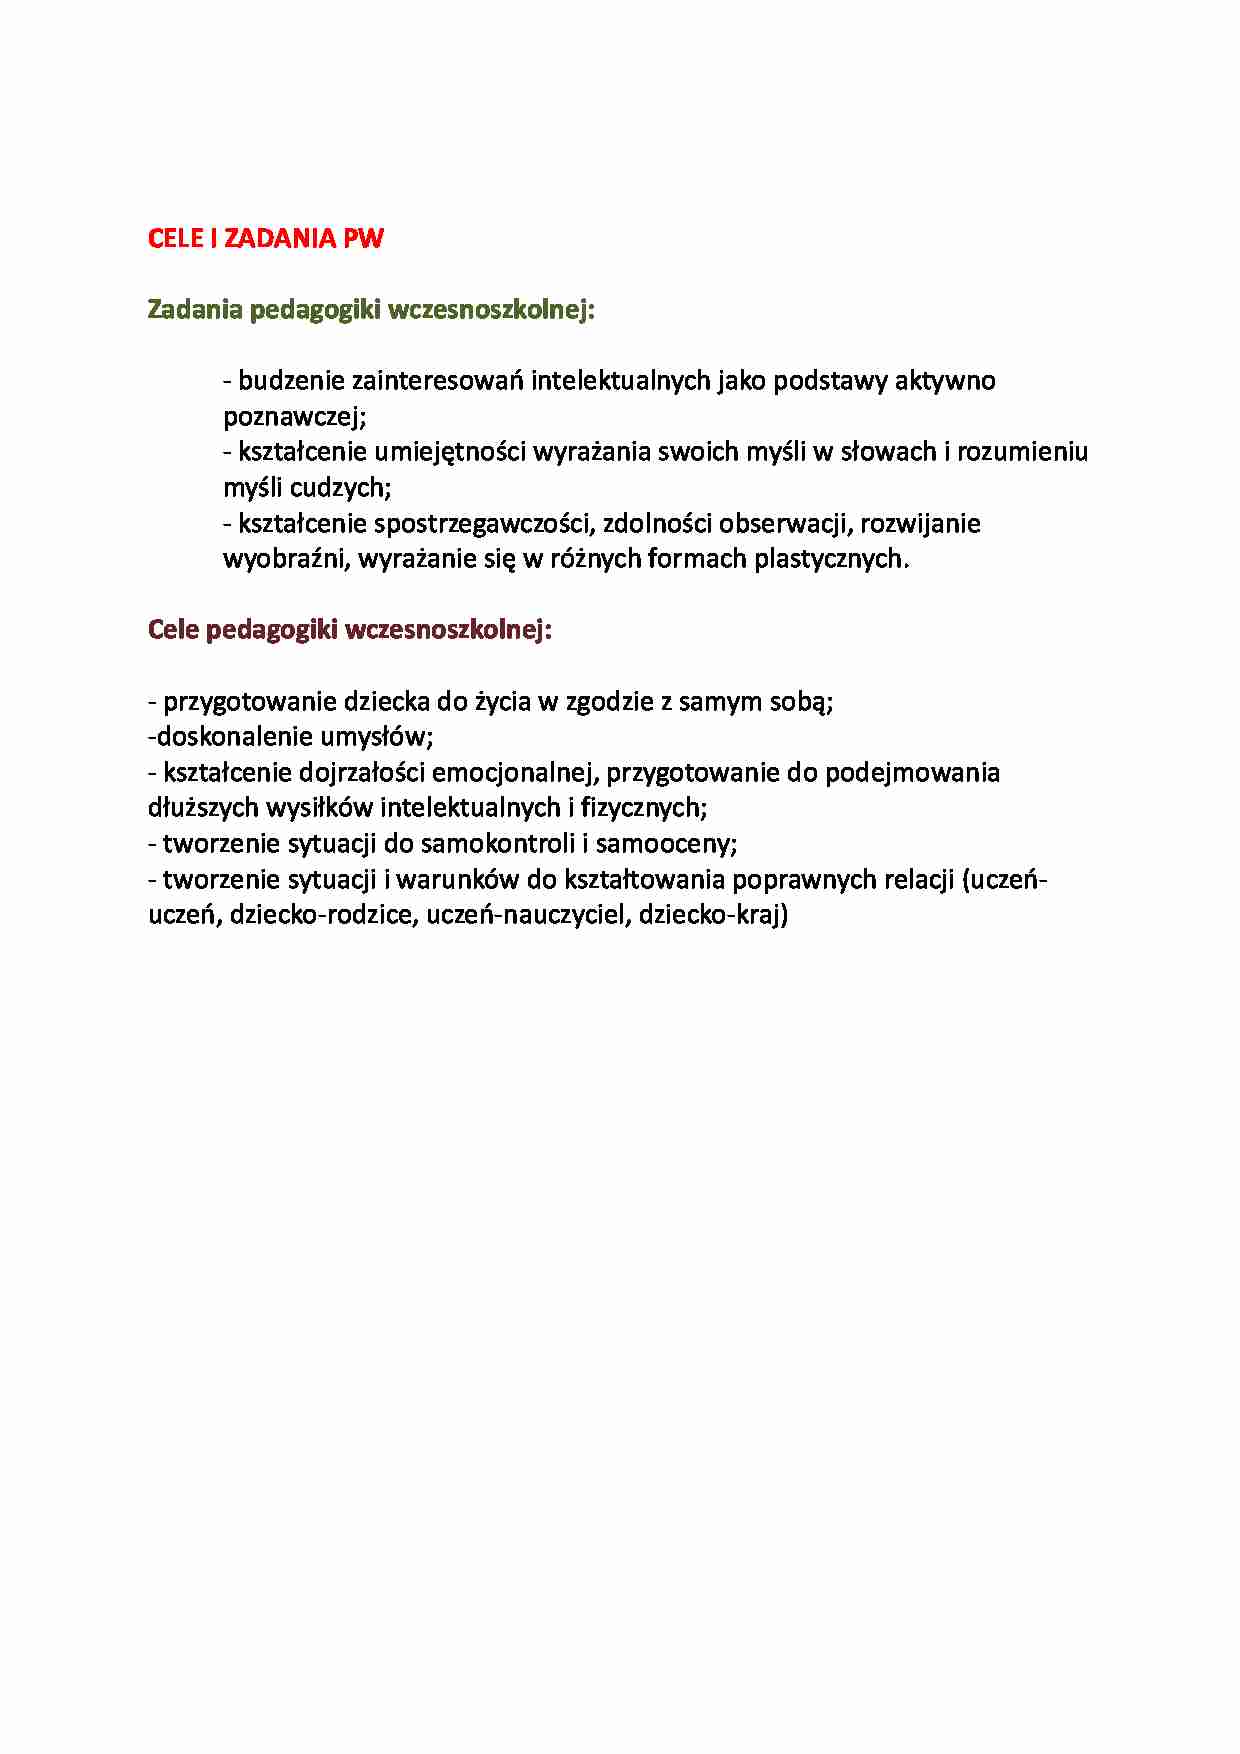 Cele i zadania pedagogiki wczesnoszkolnej-opracowanie - strona 1